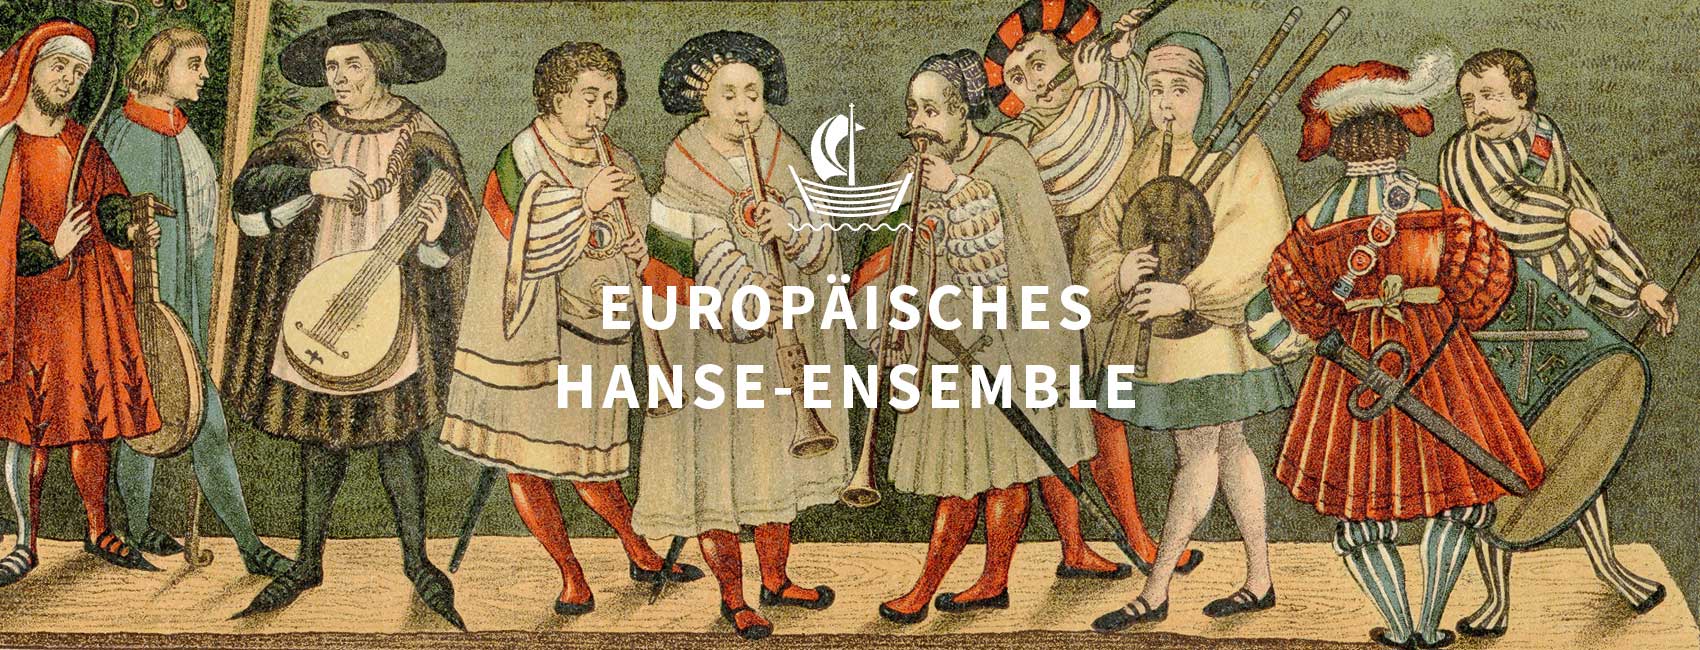 hanse-ensemble-02-DE